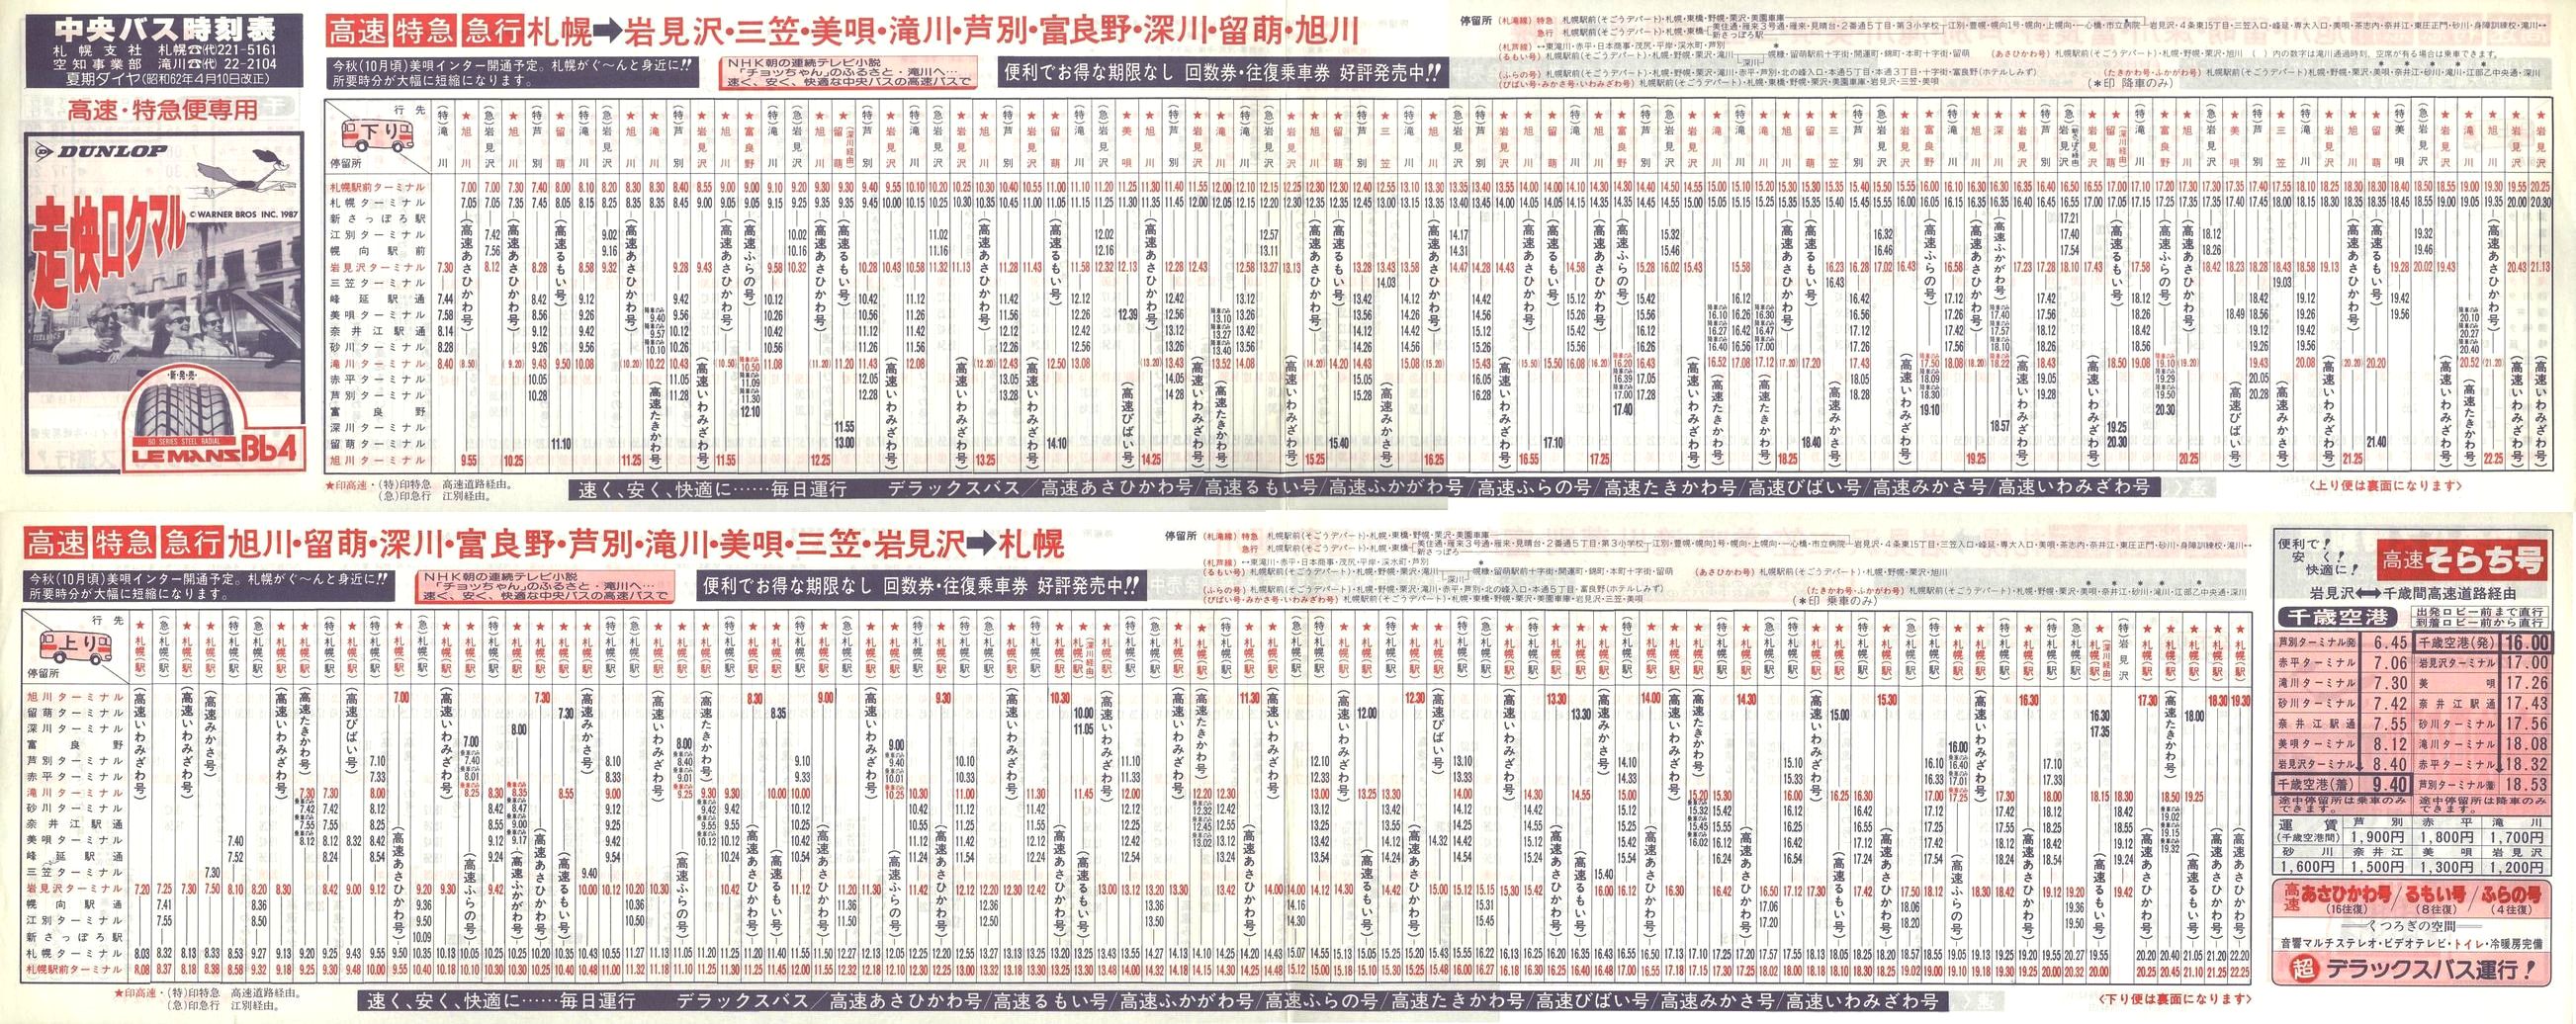 1987-04-10改正_北海道中央バス(空知)_高速特急便時刻表